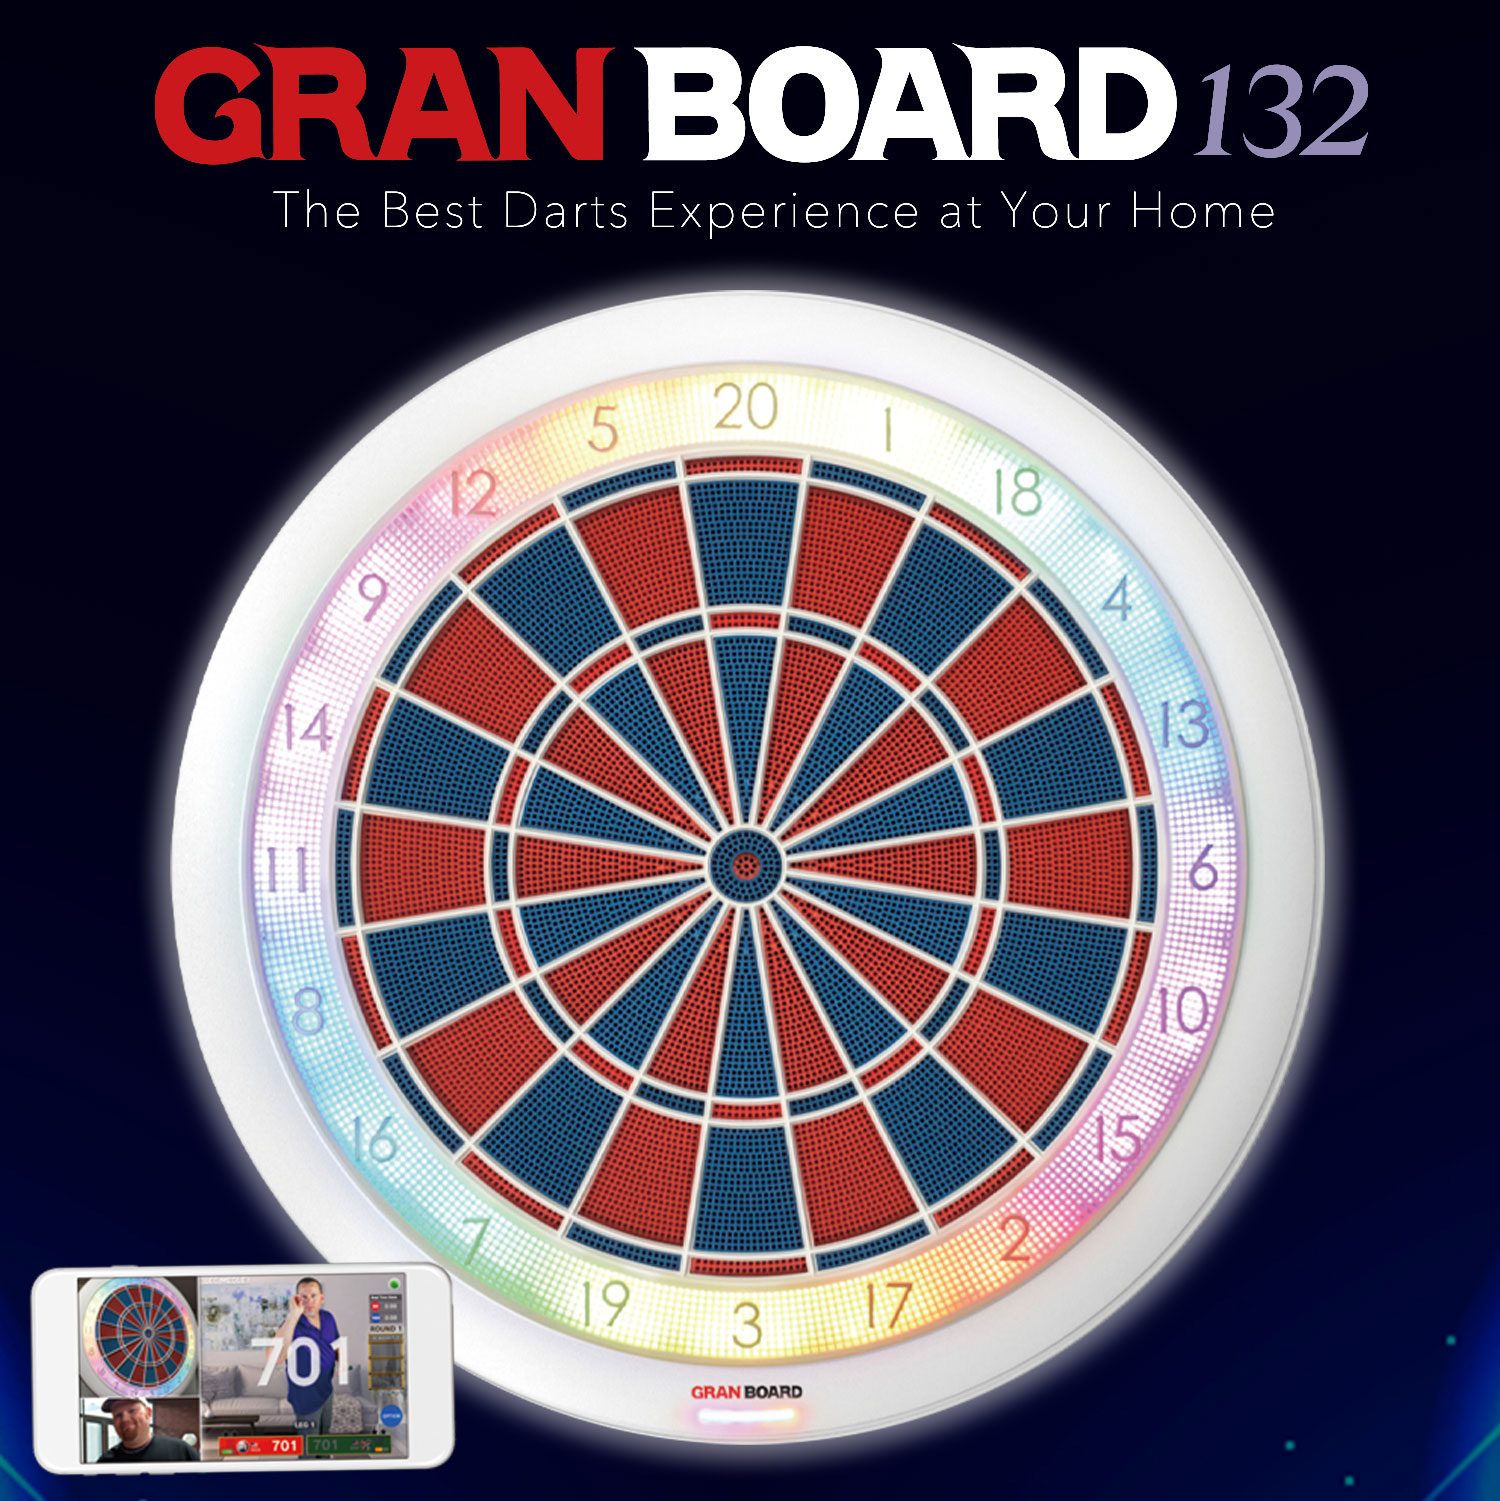 GranBoard132 Smartboard mit LED-Effektlicht und 2-Loch Segmenten f?r Android / iOS App